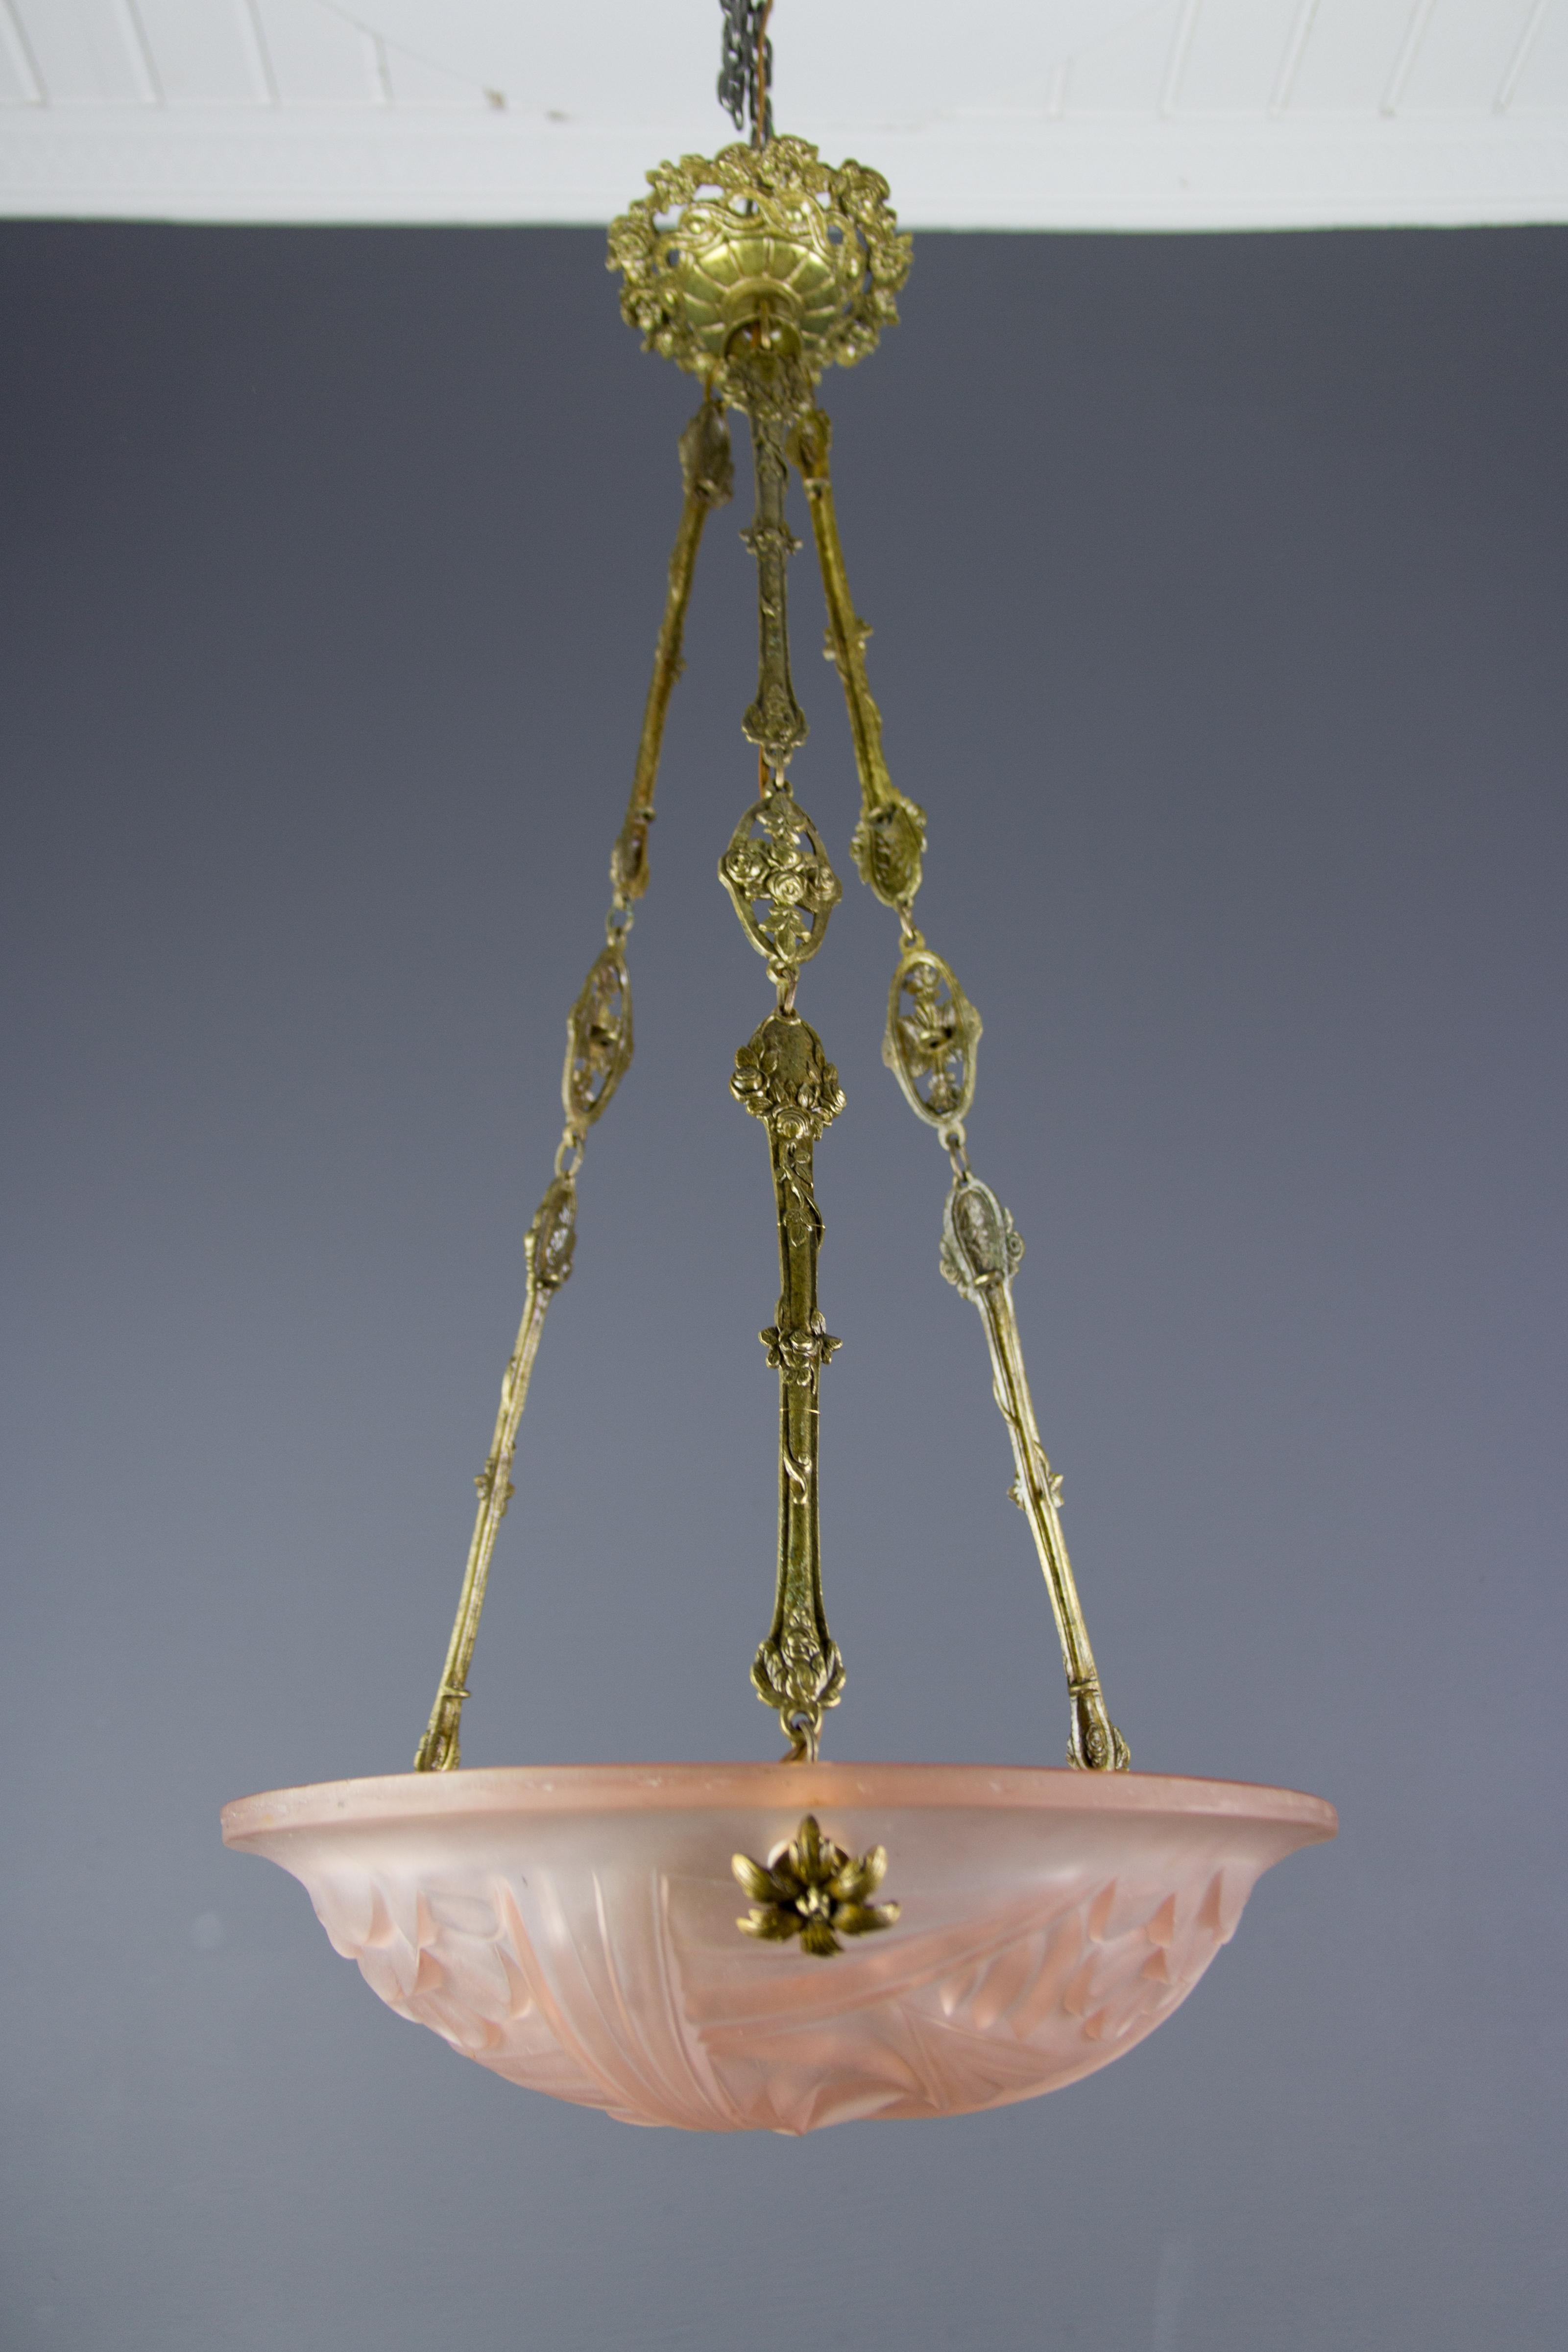 Wunderschöne französische Art Deco Hängeleuchte/Leuchter mit mattiertem Pressglasschirm von Degué, gegründet von David Guéron (1892 -1950), der sich auf Luxusglaswaren, darunter auch Kronleuchter, spezialisiert hatte. Formschöne hellrosa Glasschale